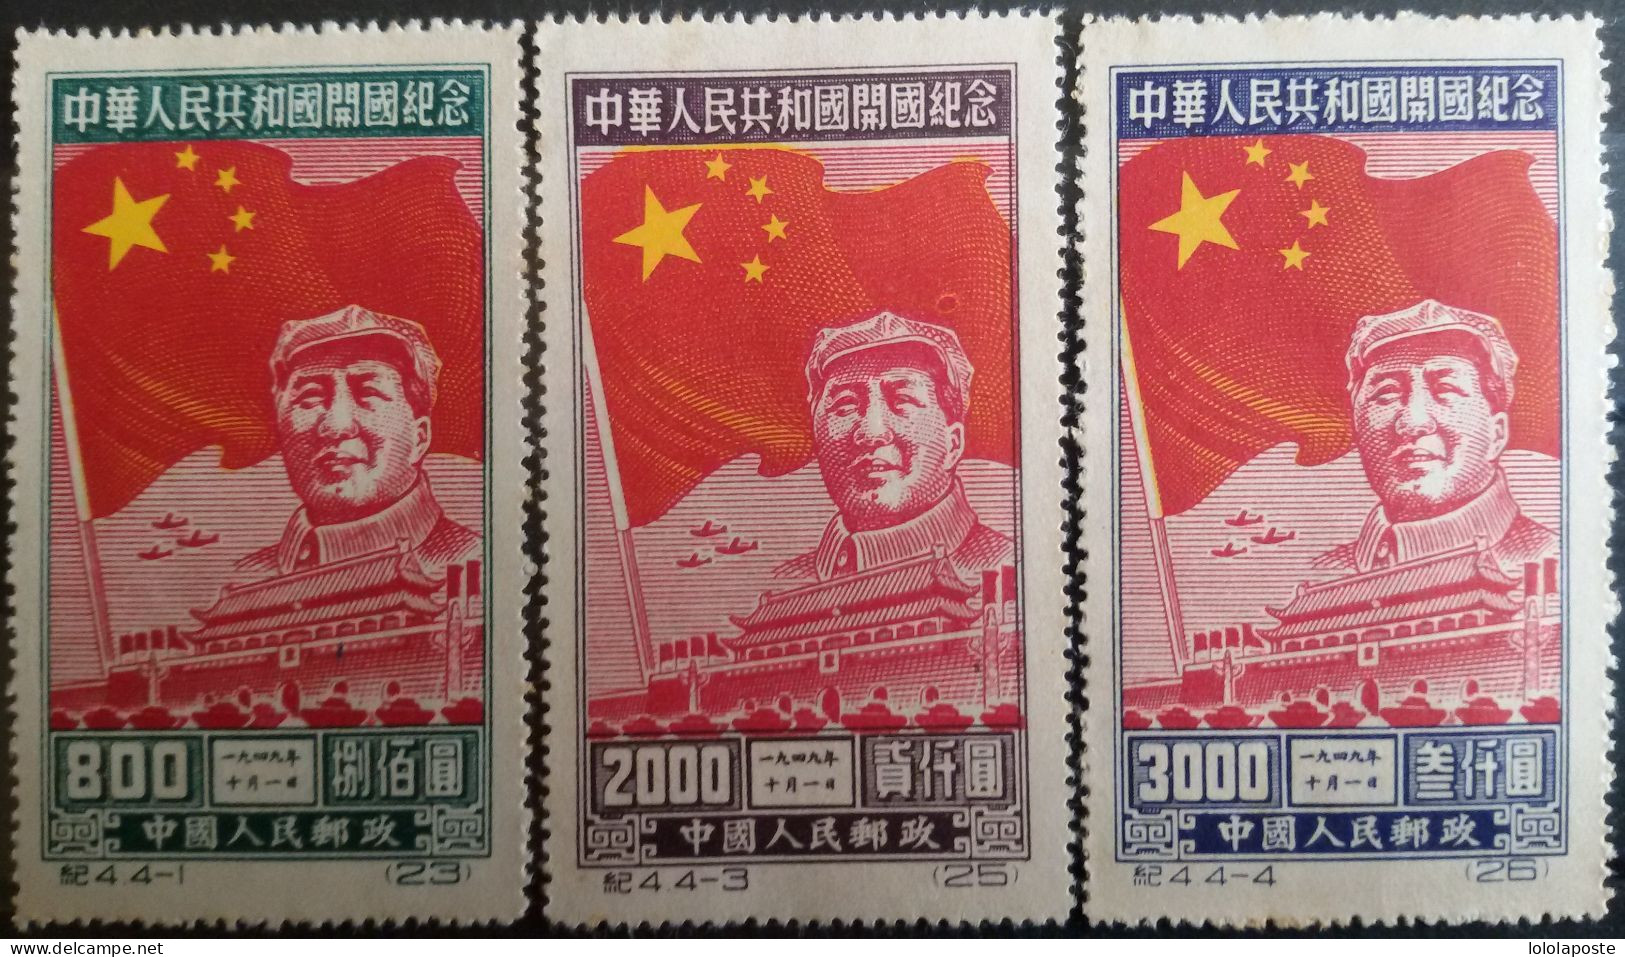 CHINE - CHINA  - 1950 - Mao Tsé-Toung Et Le Drapeau étoilé N° 849, 851 Et 852 Y&T (No Gum) Série Originale - NOT REISSUE - Unused Stamps